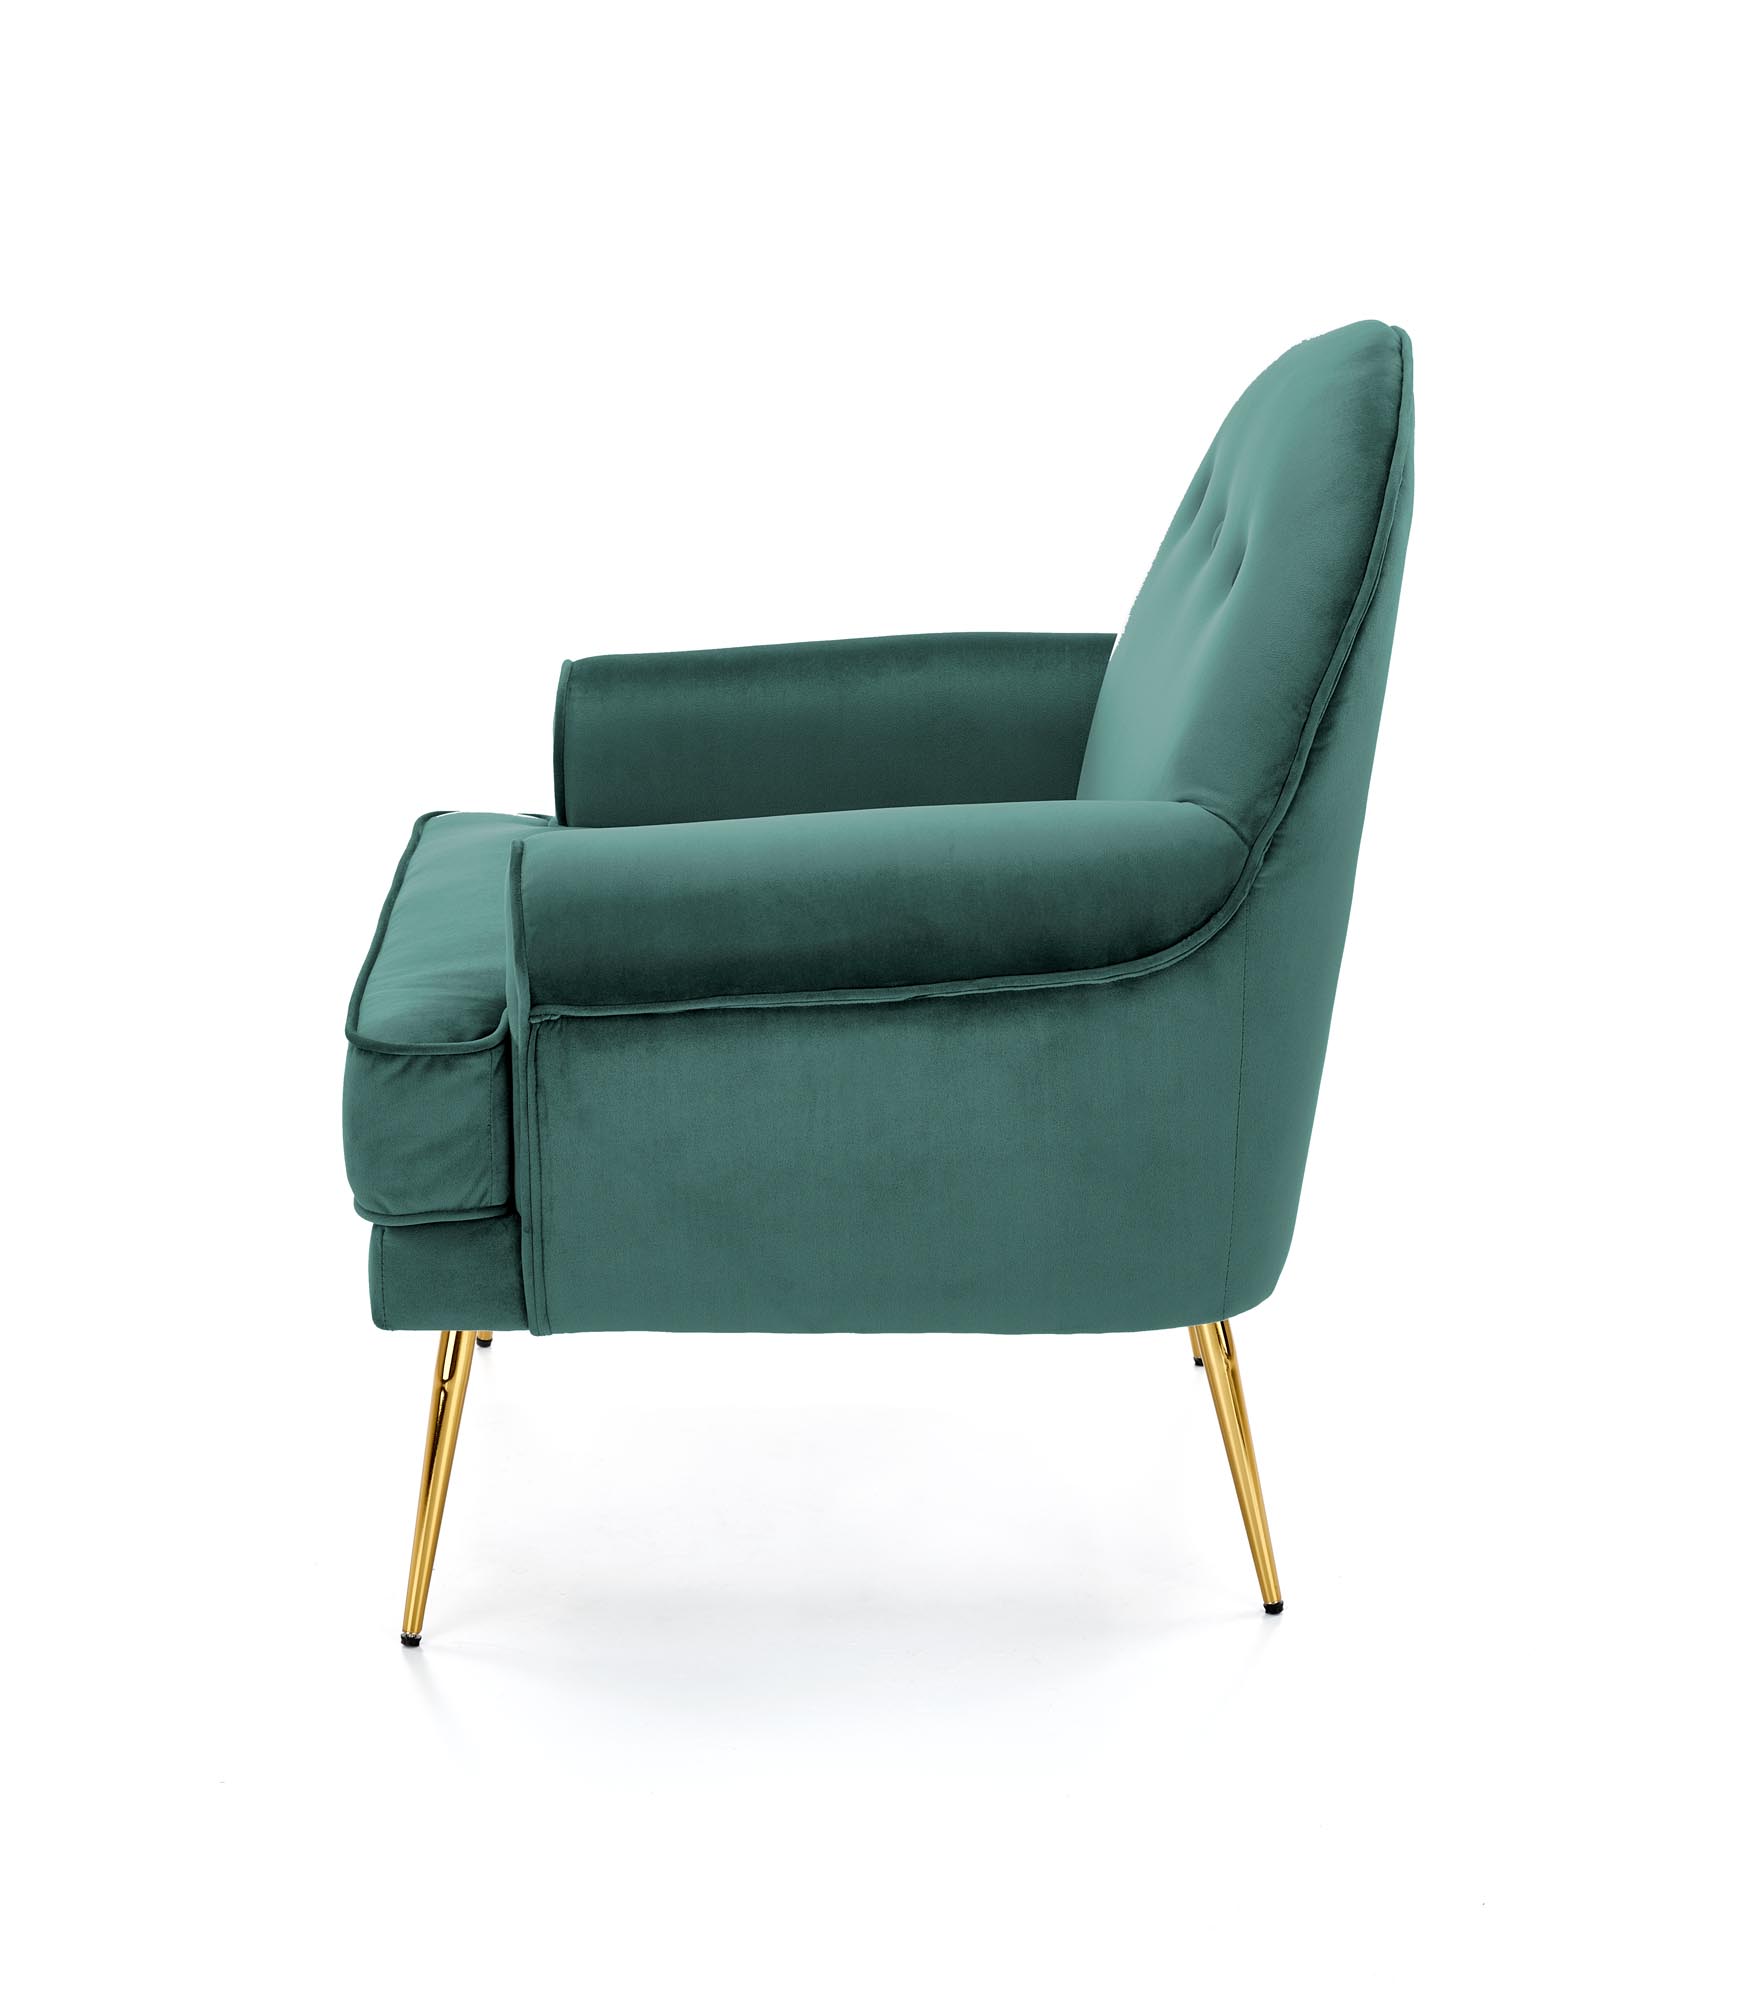 SANTI fotel wypoczynkowy ciemny zielony / złoty santi fotel wypoczynkowy ciemny zielony / złoty